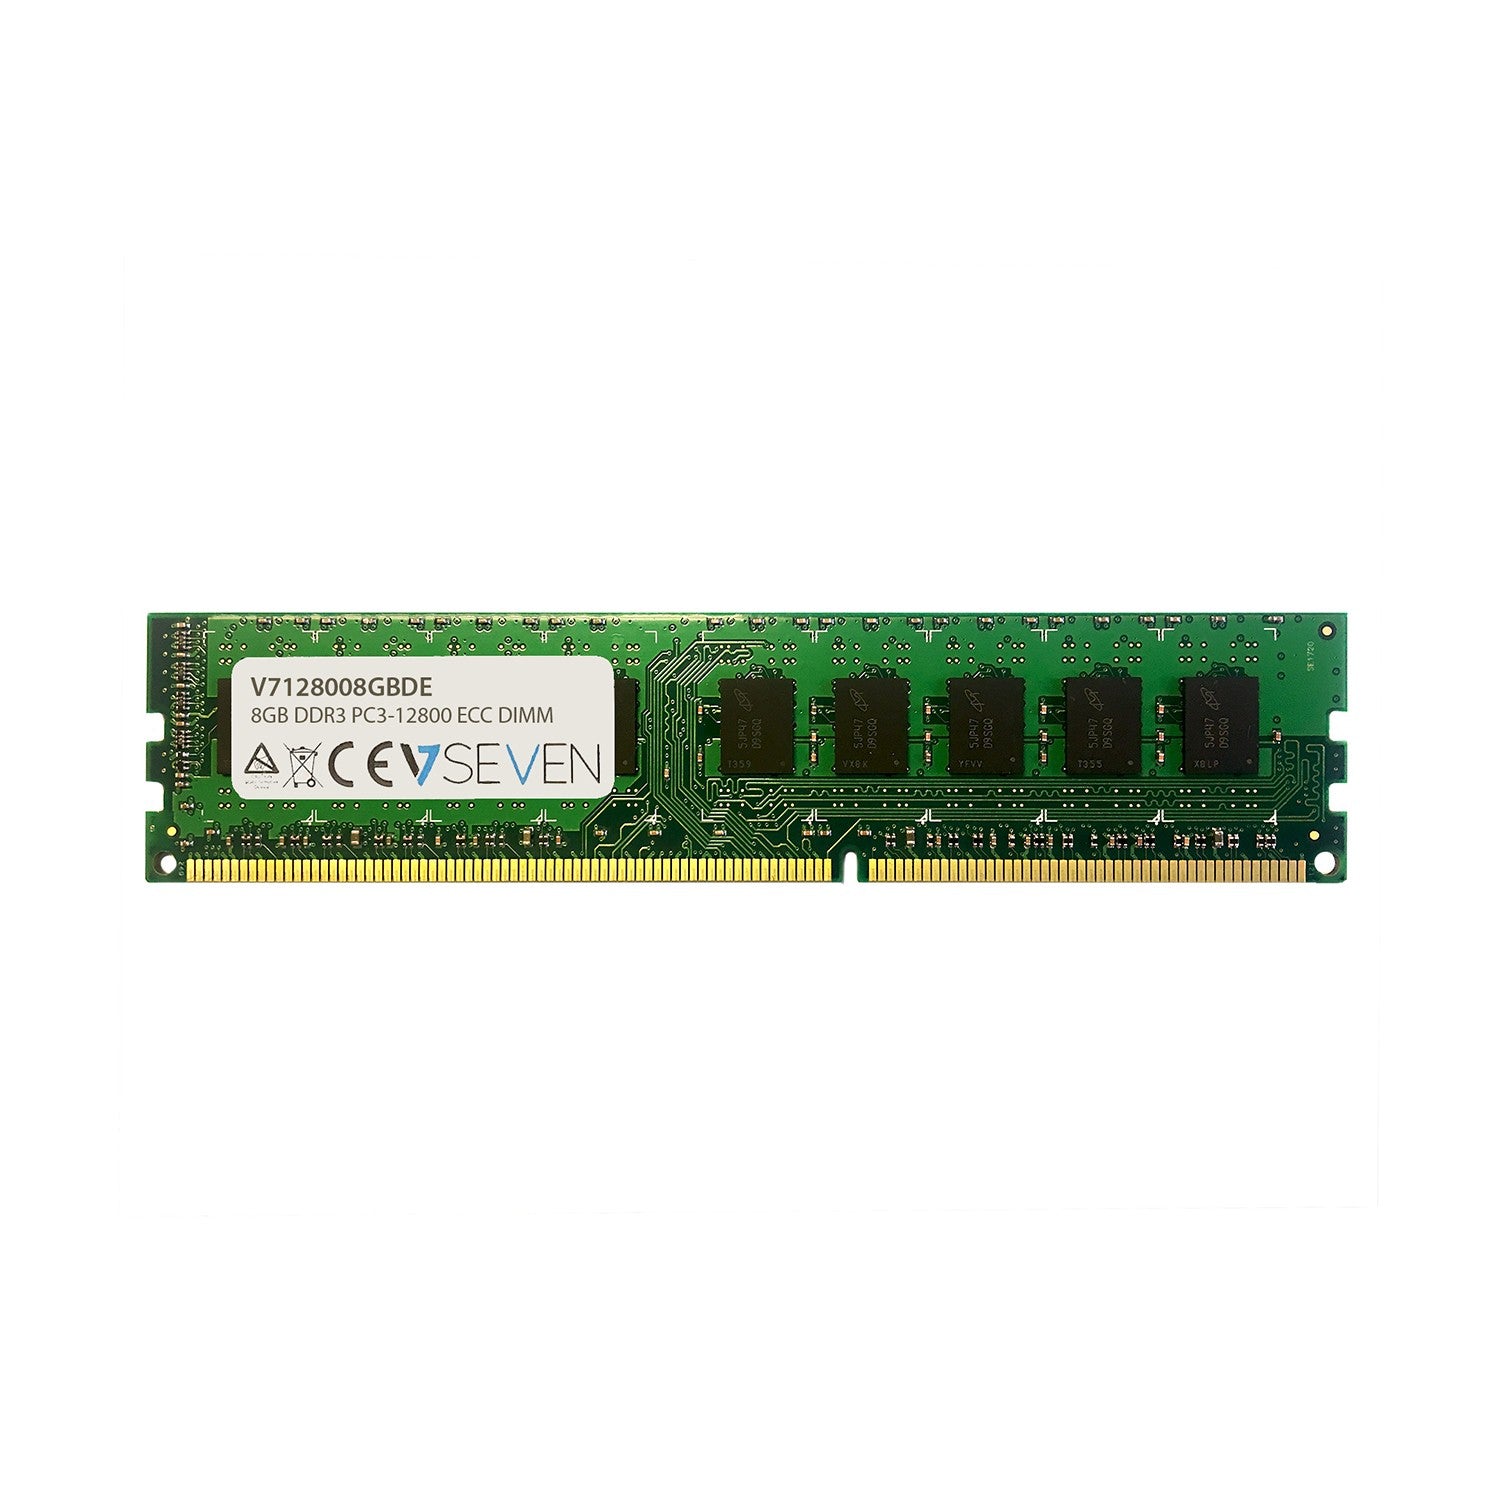 V7 8GB DDR3 PC3-12800 - 1600MHz ECC DIMM Server Memory Module - V7128008GBDE